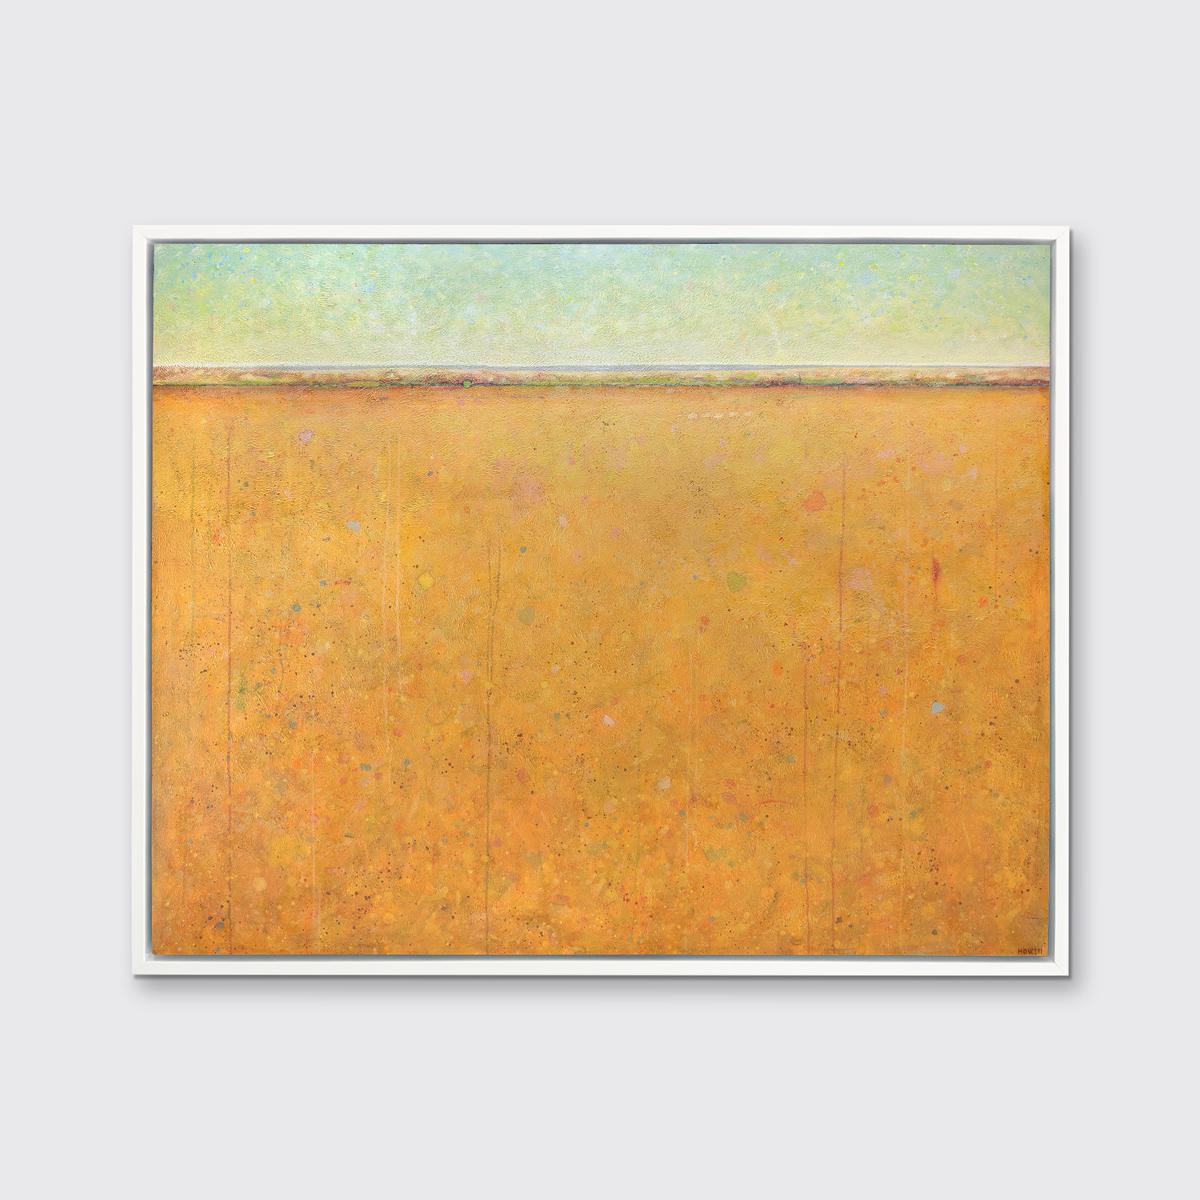 Cette impression à tirage limité est un paysage abstrait d'Elwood Howell. Il présente une ligne d'horizon élevée - un jaune orangé profond avec des formes organiques rouges, vertes et jaunes atténuées se trouvent sous la ligne, tandis qu'au-dessus,